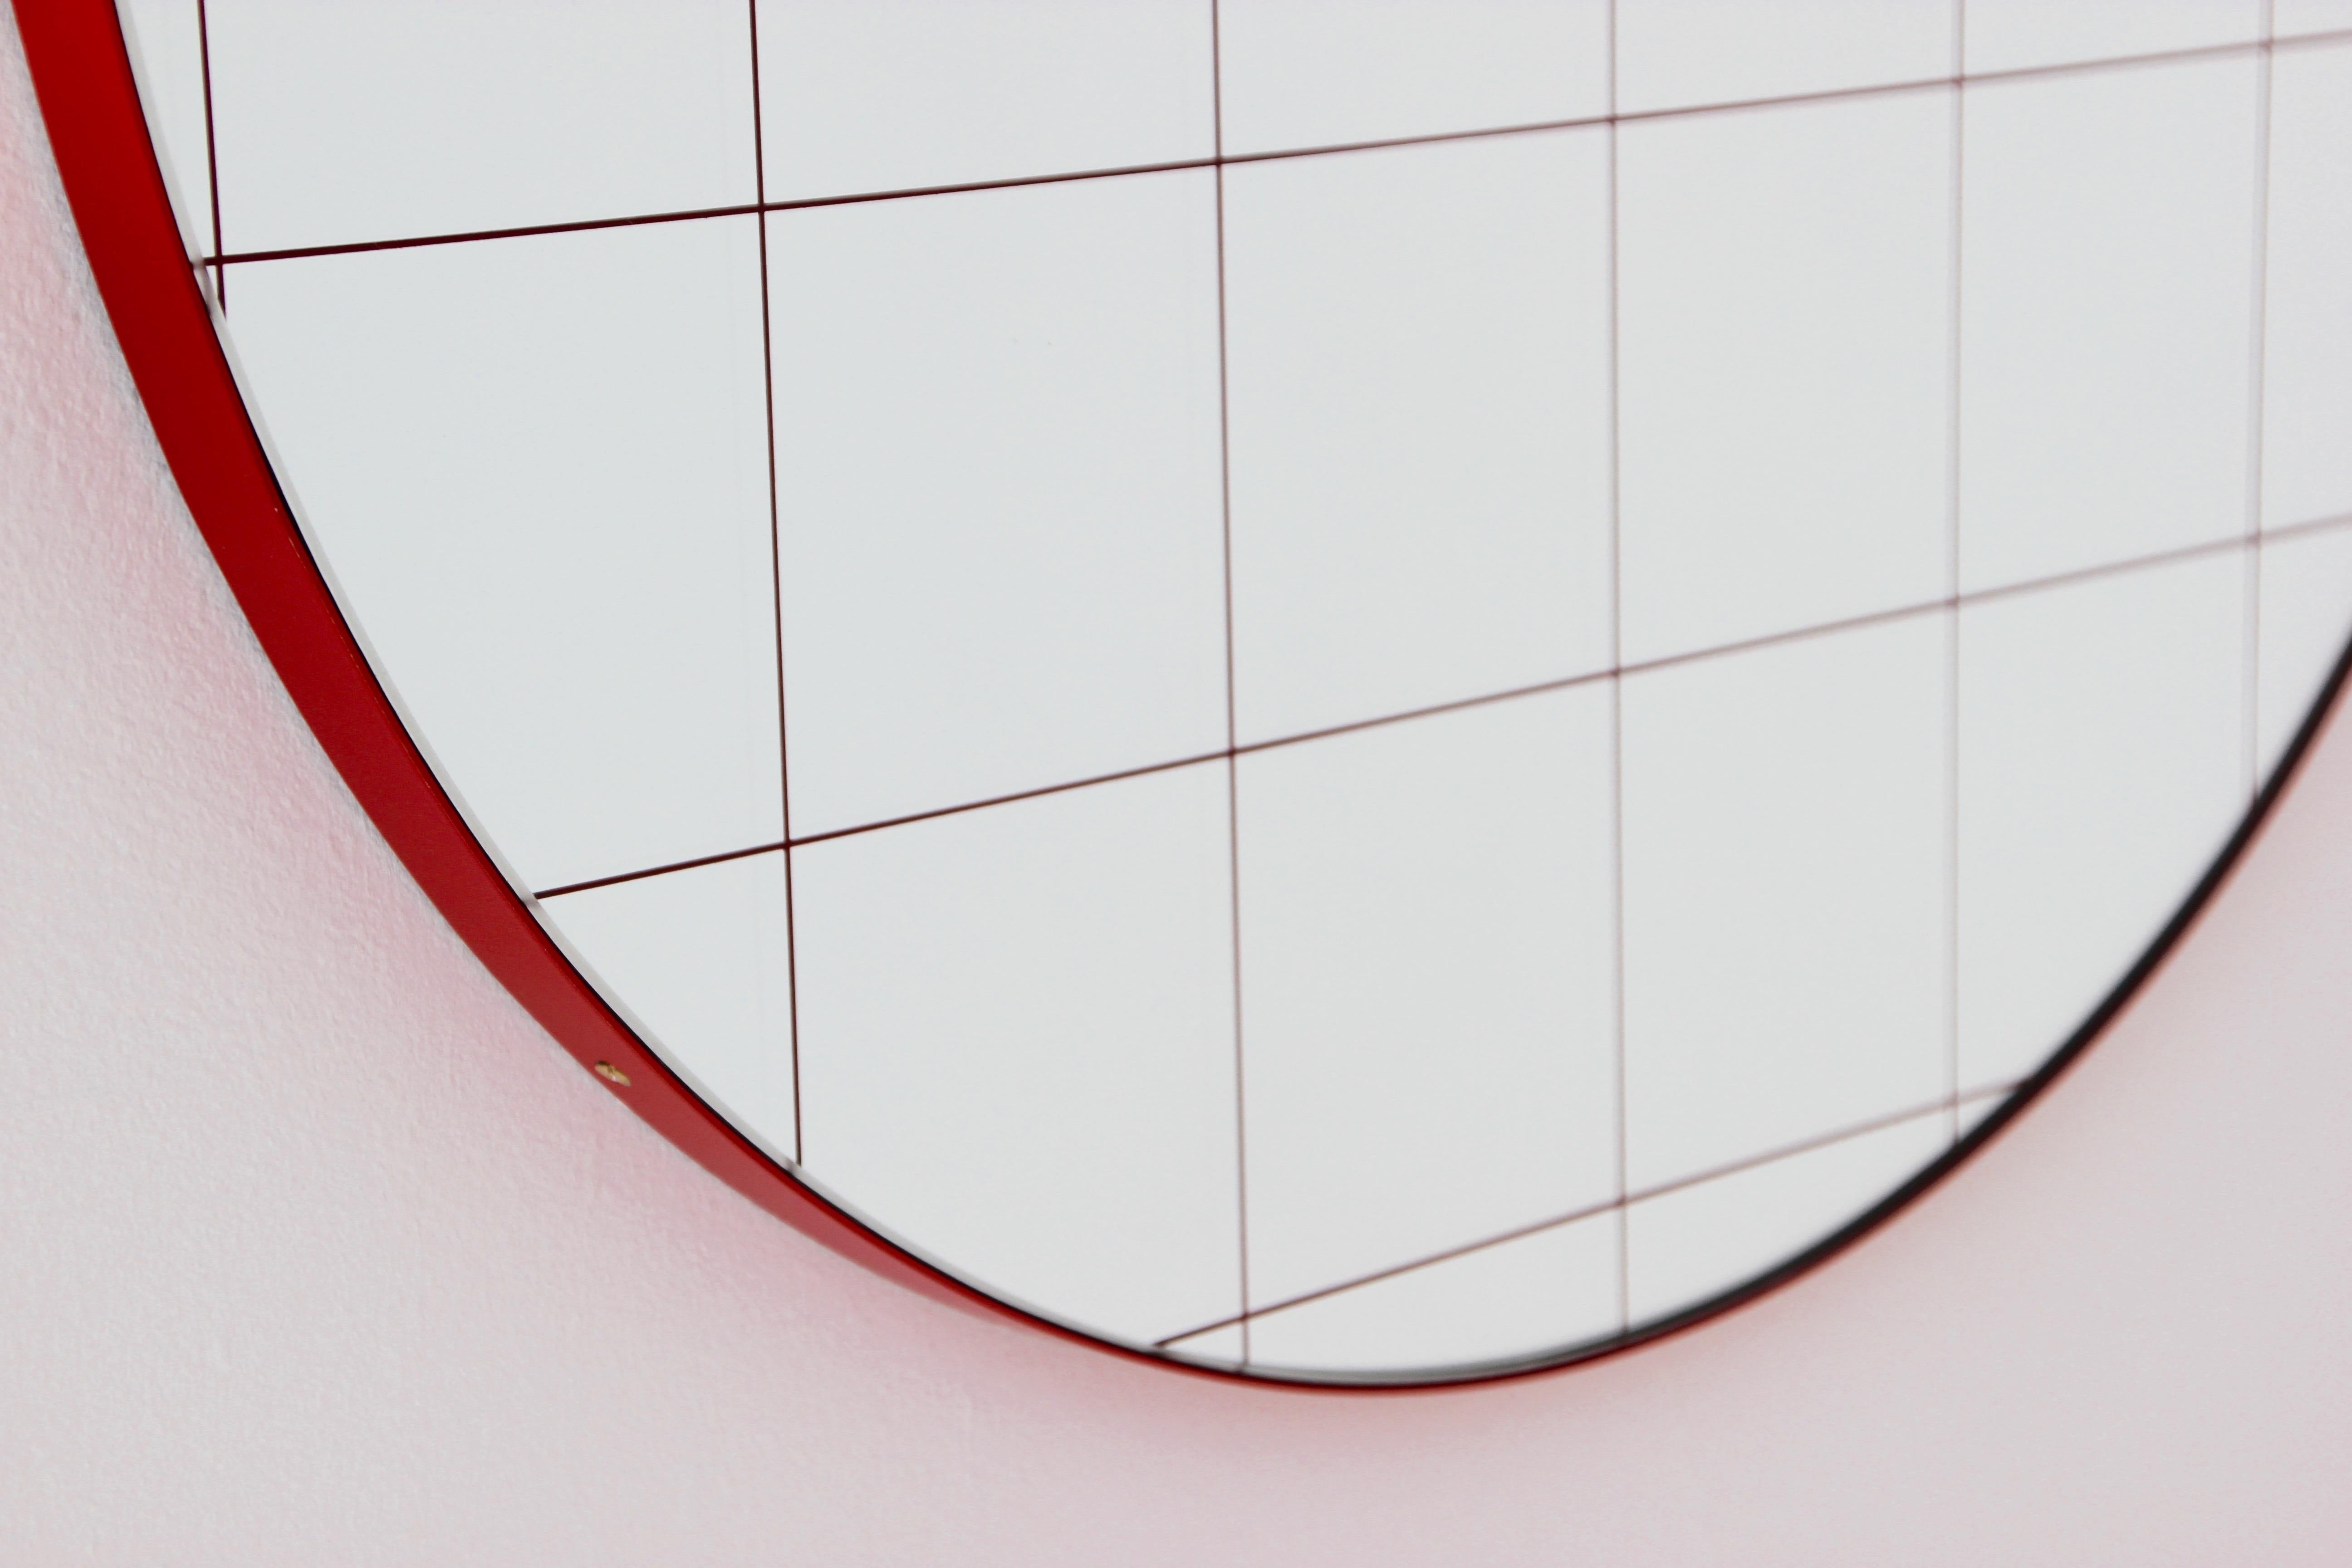 Orbis Red Grid Sandblasted Round Modern Mirror with Red Frame, Regular 2